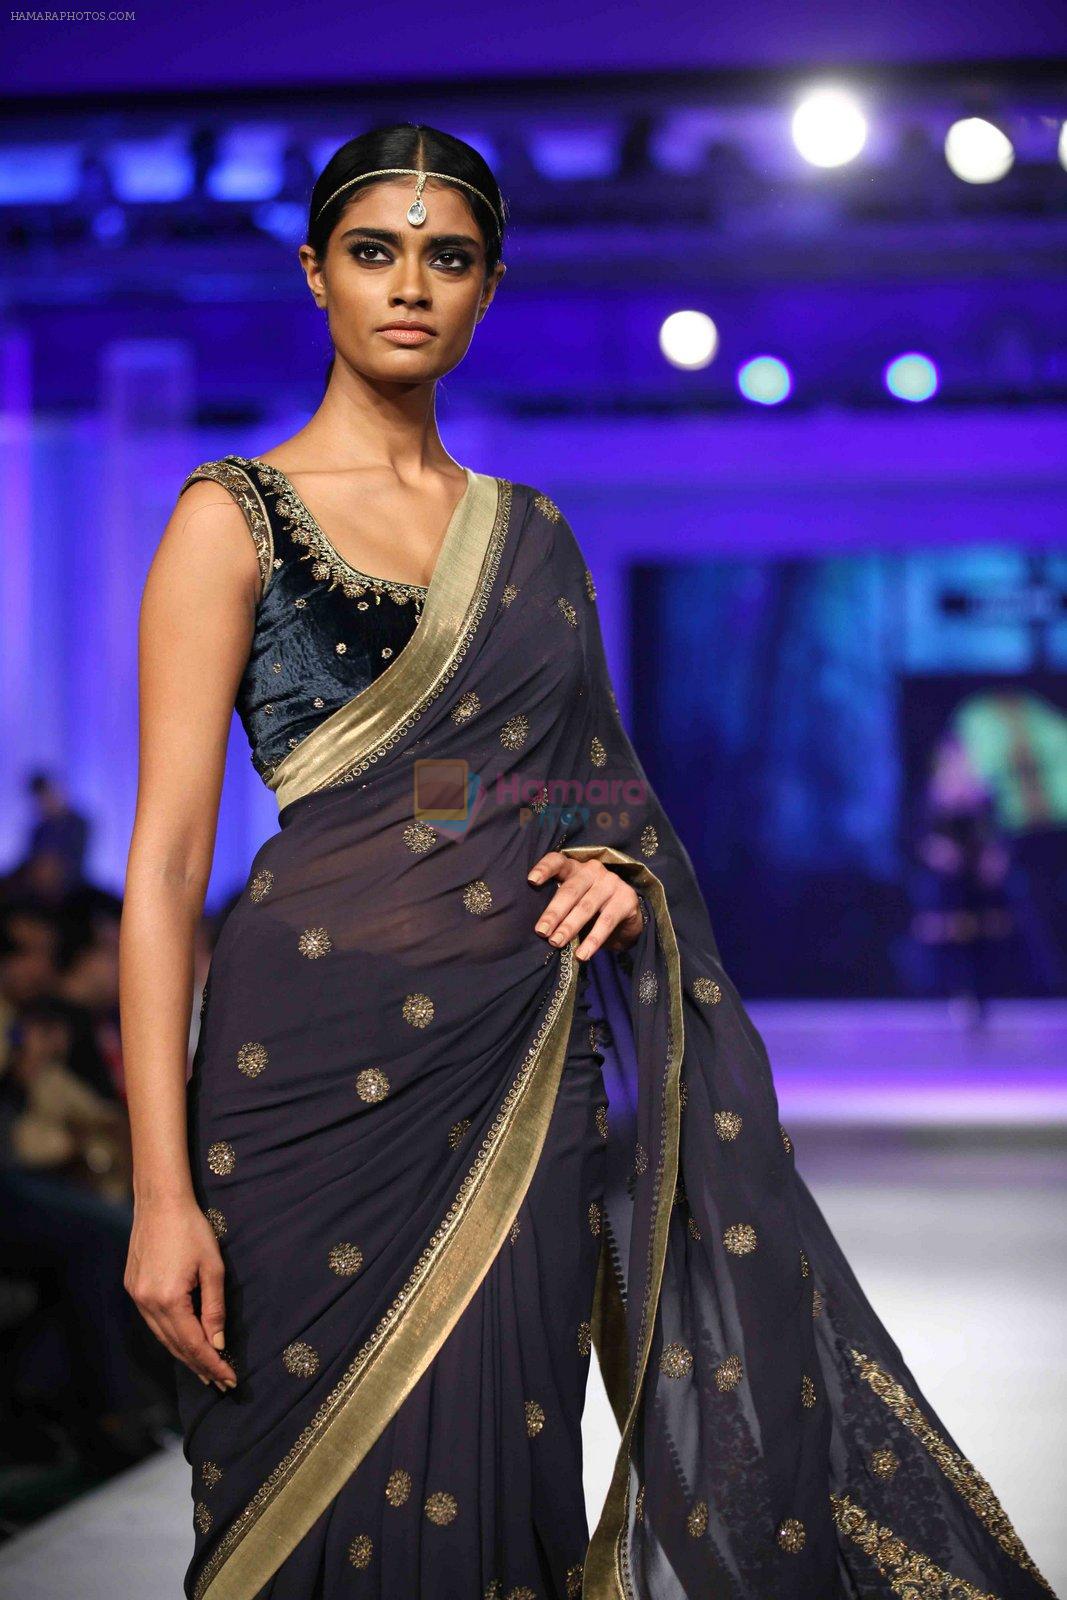 Model walks for JJ Valaya in Kolkata for Blenders show on 8th Nov 2015